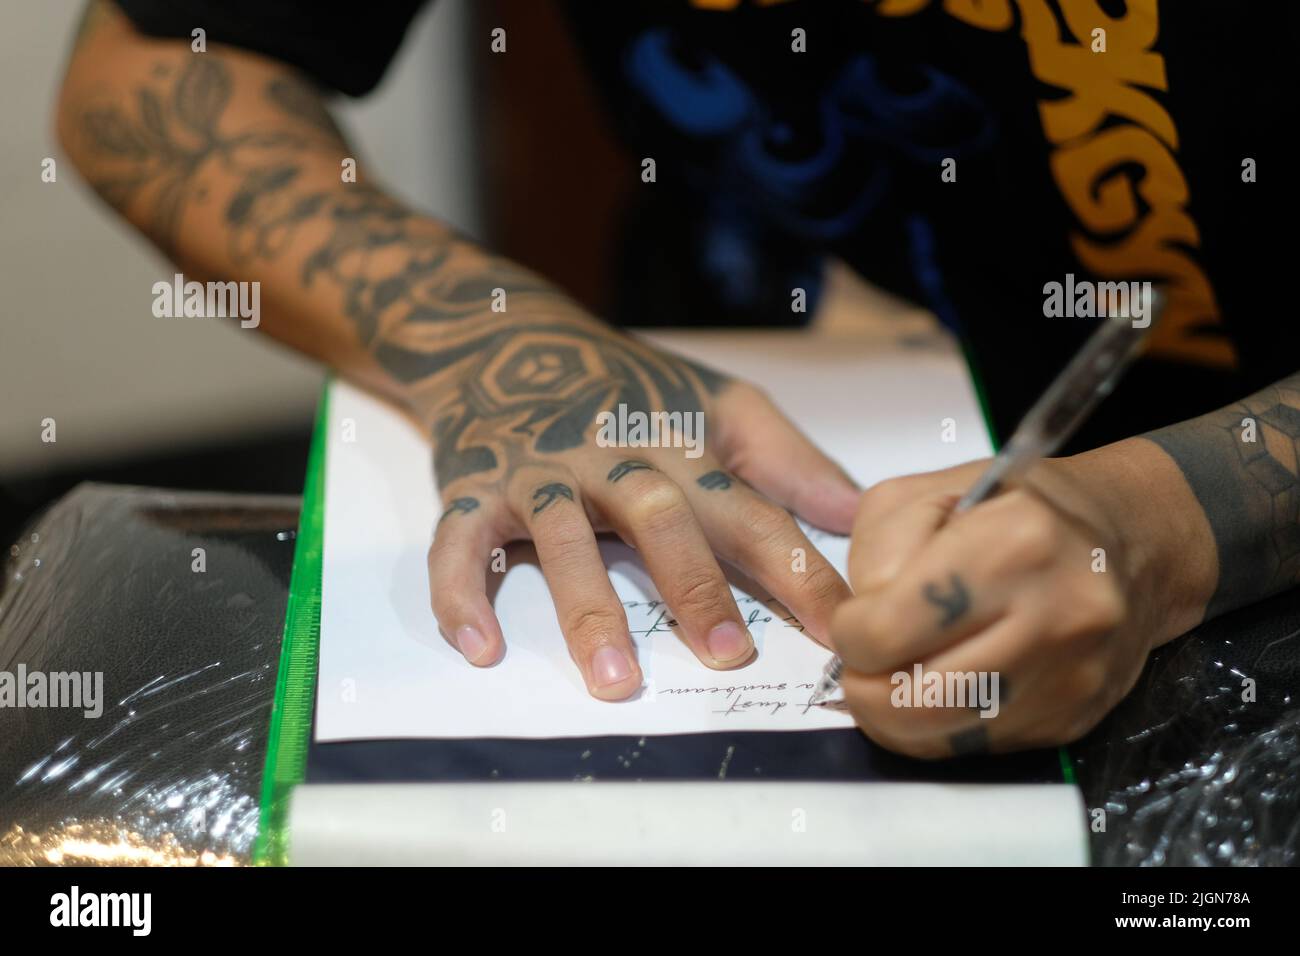 Artiste de tatouage masculin, bras remplis de dessins incrustés, pochoirs cursive script sur papier blanc avec un stylo en préparation pour une session de tatouage. Banque D'Images